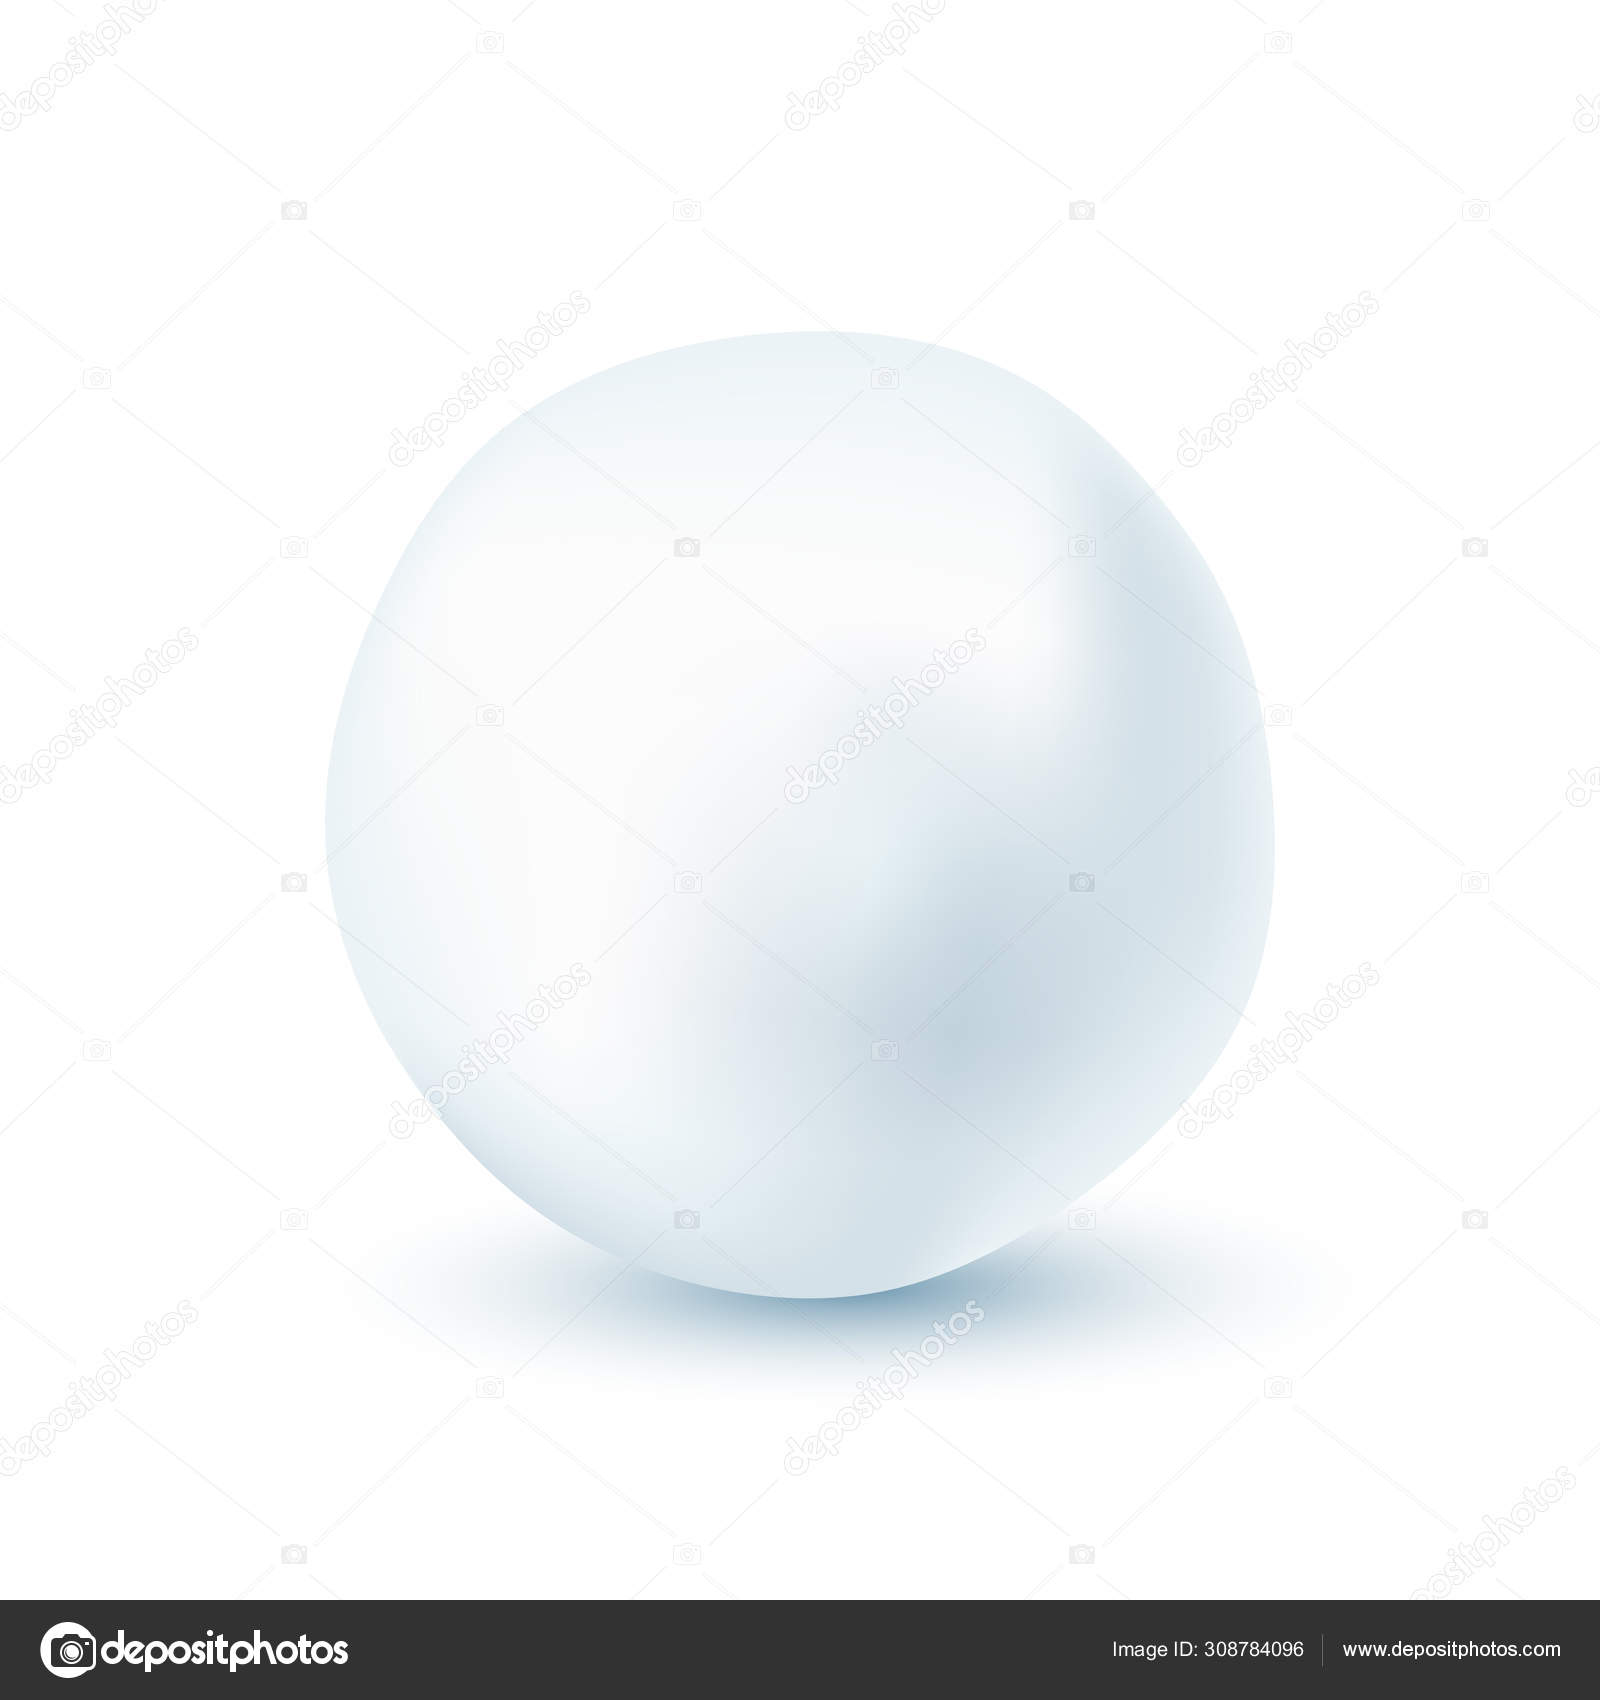 https://st4.depositphotos.com/1954927/30878/v/1600/depositphotos_308784096-stock-illustration-snowball-isolated-on-white-background.jpg